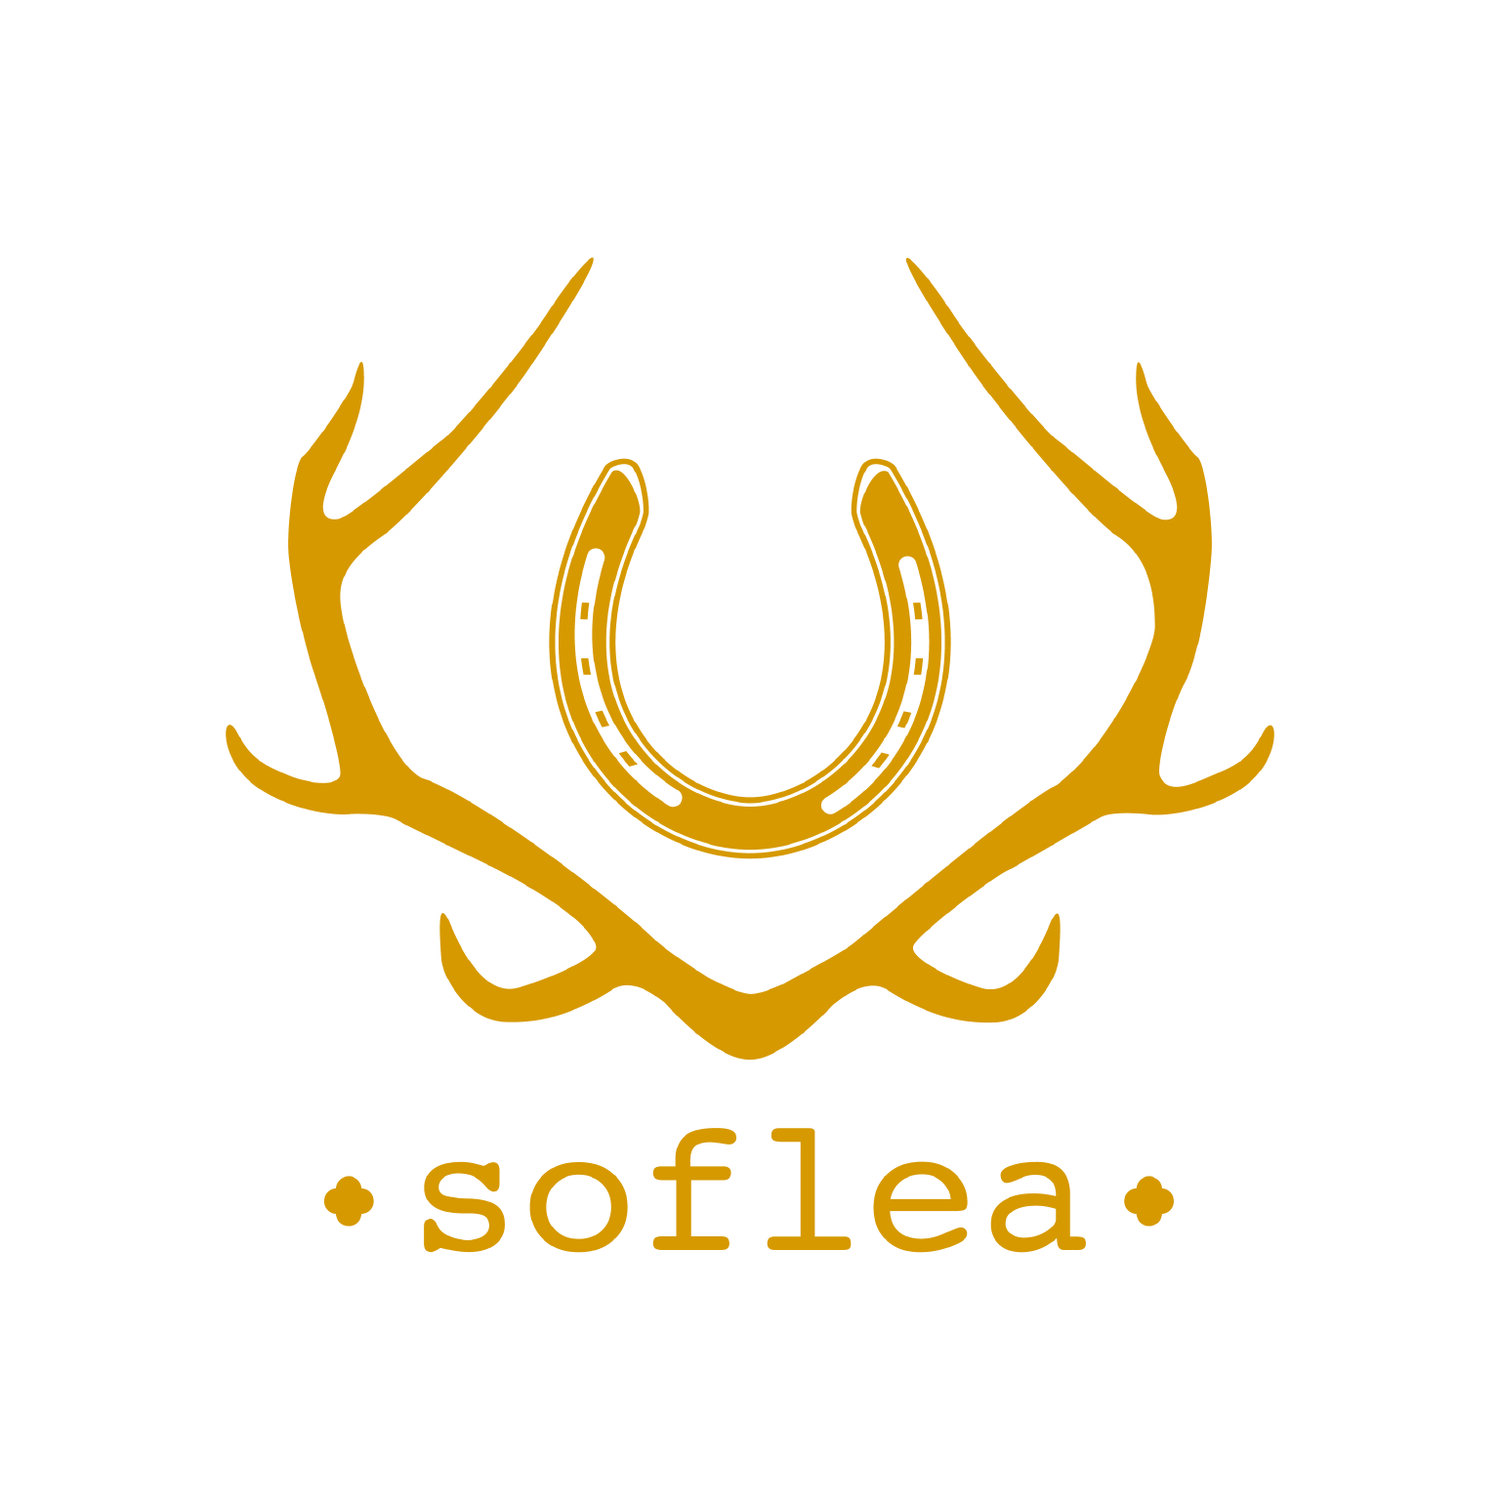 Soflea